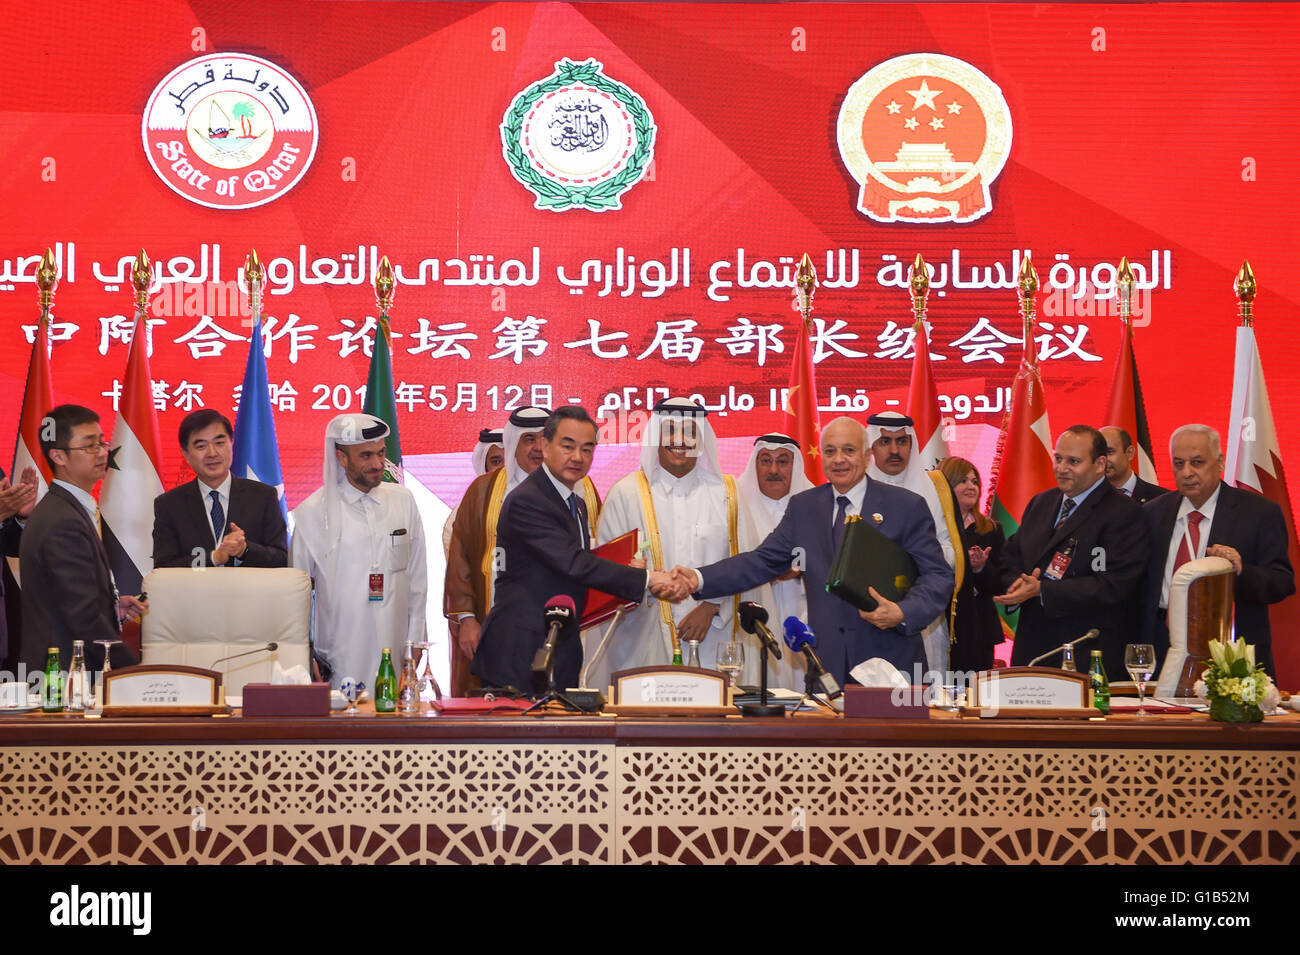 Doha, Qatar. 12 mai, 2016. Le Ministre chinois des affaires étrangères Wang Yi(L), serre la main avec le Secrétaire général de la Ligue arabe, Nabil El Araby(R) avant, après la signature de documents au cours de la cérémonie de clôture de la septième réunion ministérielle du Forum de coopération sino-arabe Membres à Doha, capitale du Qatar, le 12 mai 2016. © Meng Tao/Xinhua/Alamy Live News Banque D'Images